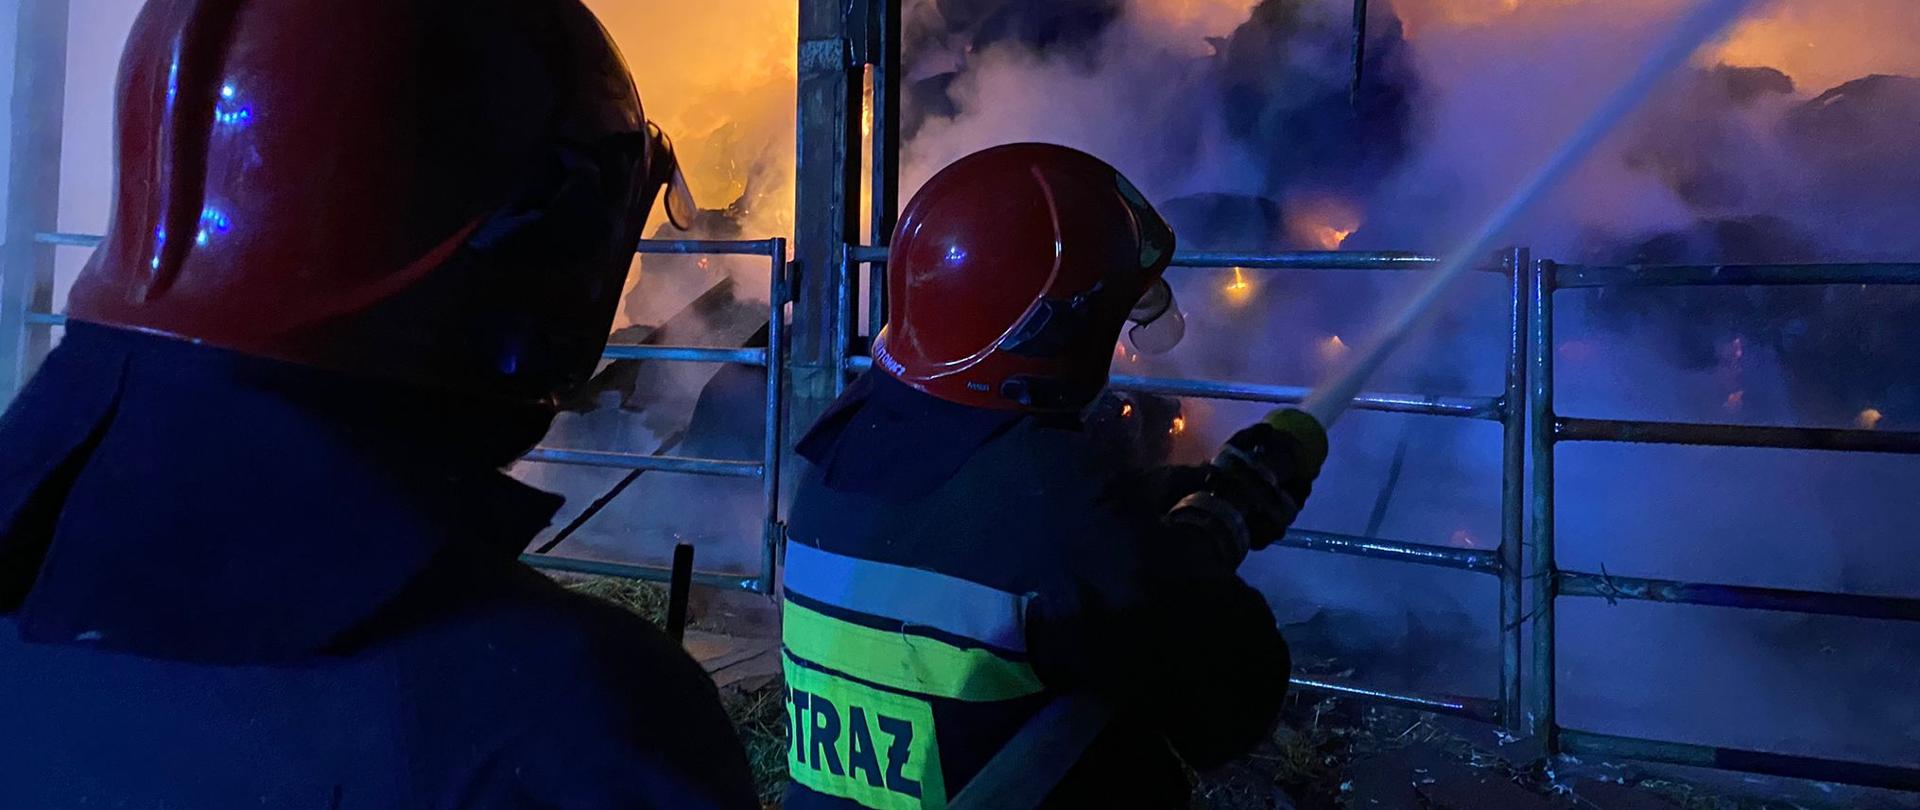 Pożar słomy magazynowanej w budynku gospodarczym o wymiarach 30 x 15 x 7 m w Kopaniewie w gminie Wicko. Dwaj strażacy podają prąd gaśniczy w natarciu do wnętrza palącego się budynku. We wnętrzu widoczne płomienie. Panuje silne zadymienie. Działania prowadzone w porze nocnej.